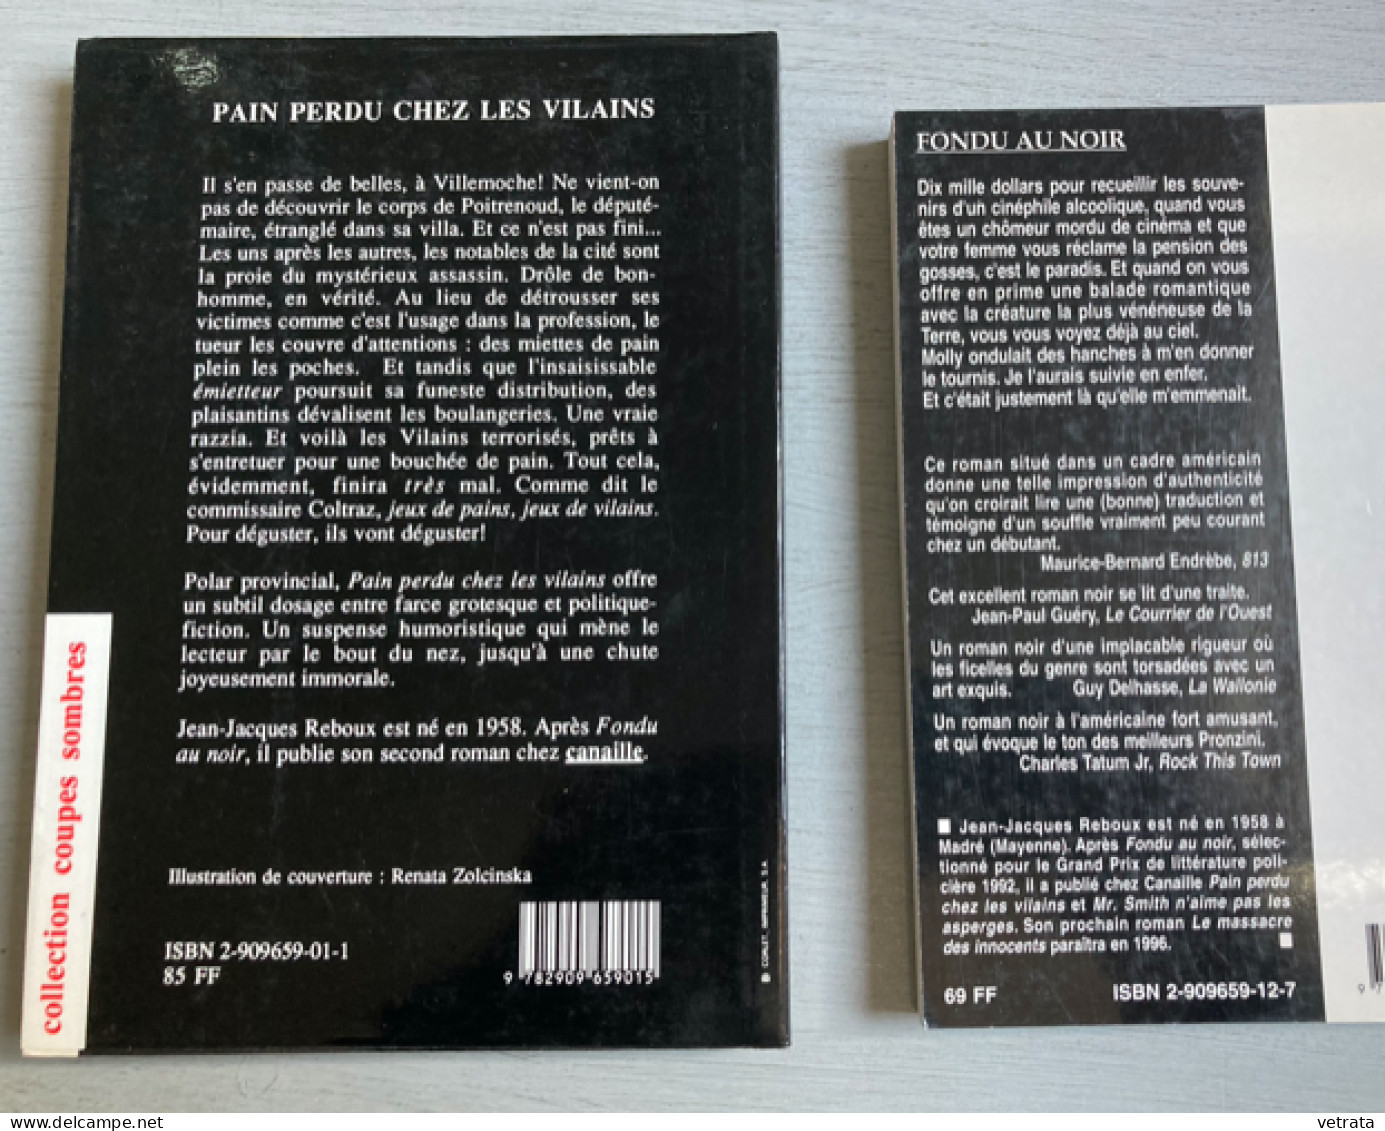 2 Livres De Jean-Jacques Reboux = Pain Perdu Chez Les Vilains (1992) & Fondu Au Noir (1995) Ed. Canaille - Wholesale, Bulk Lots